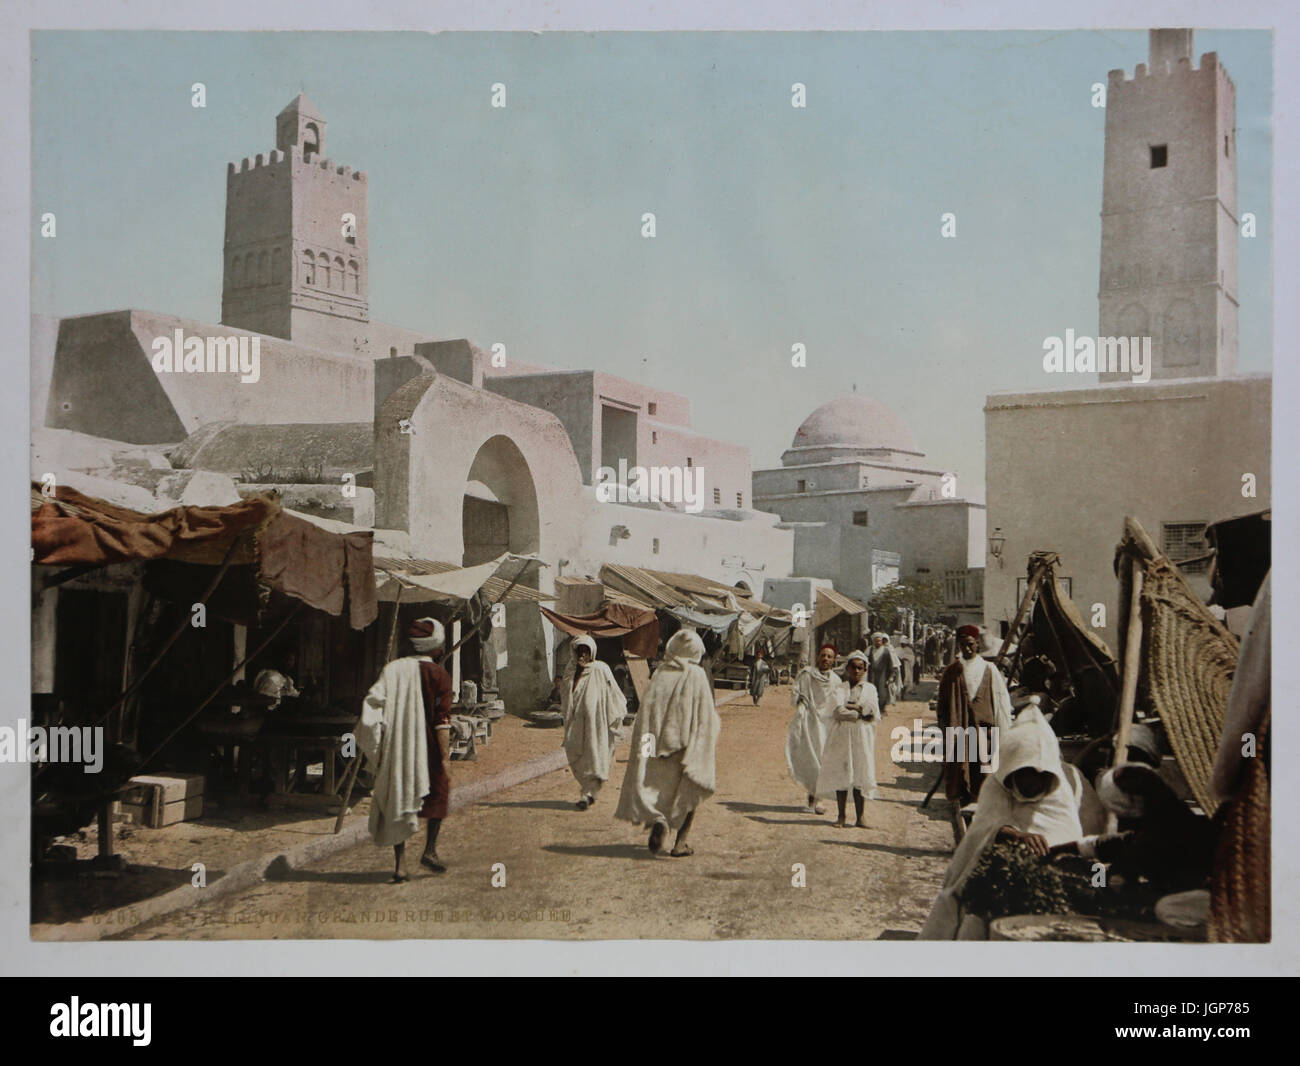 Vista de Kairouan, Túnez. Gran Avenida et mezquita circa 1899. Impresión fotocroma. Parte de un álbum de fotos. Foto de stock